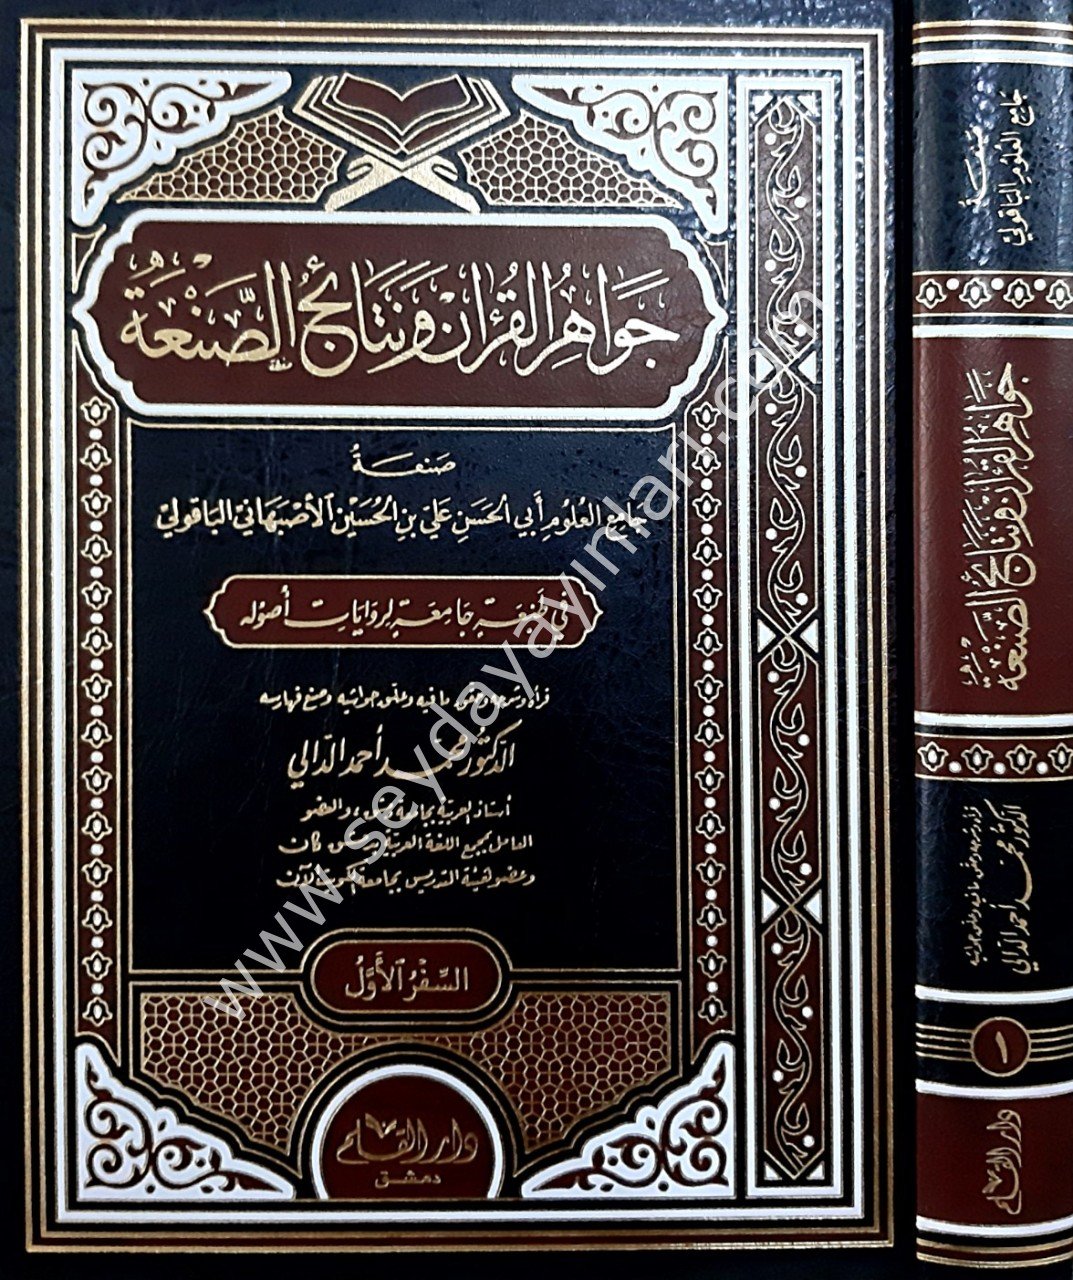 Cevahiru'l Kur'an ve Netaicu's-Sanaat 1/4 جواهر القرآن و نتائج الصنعة